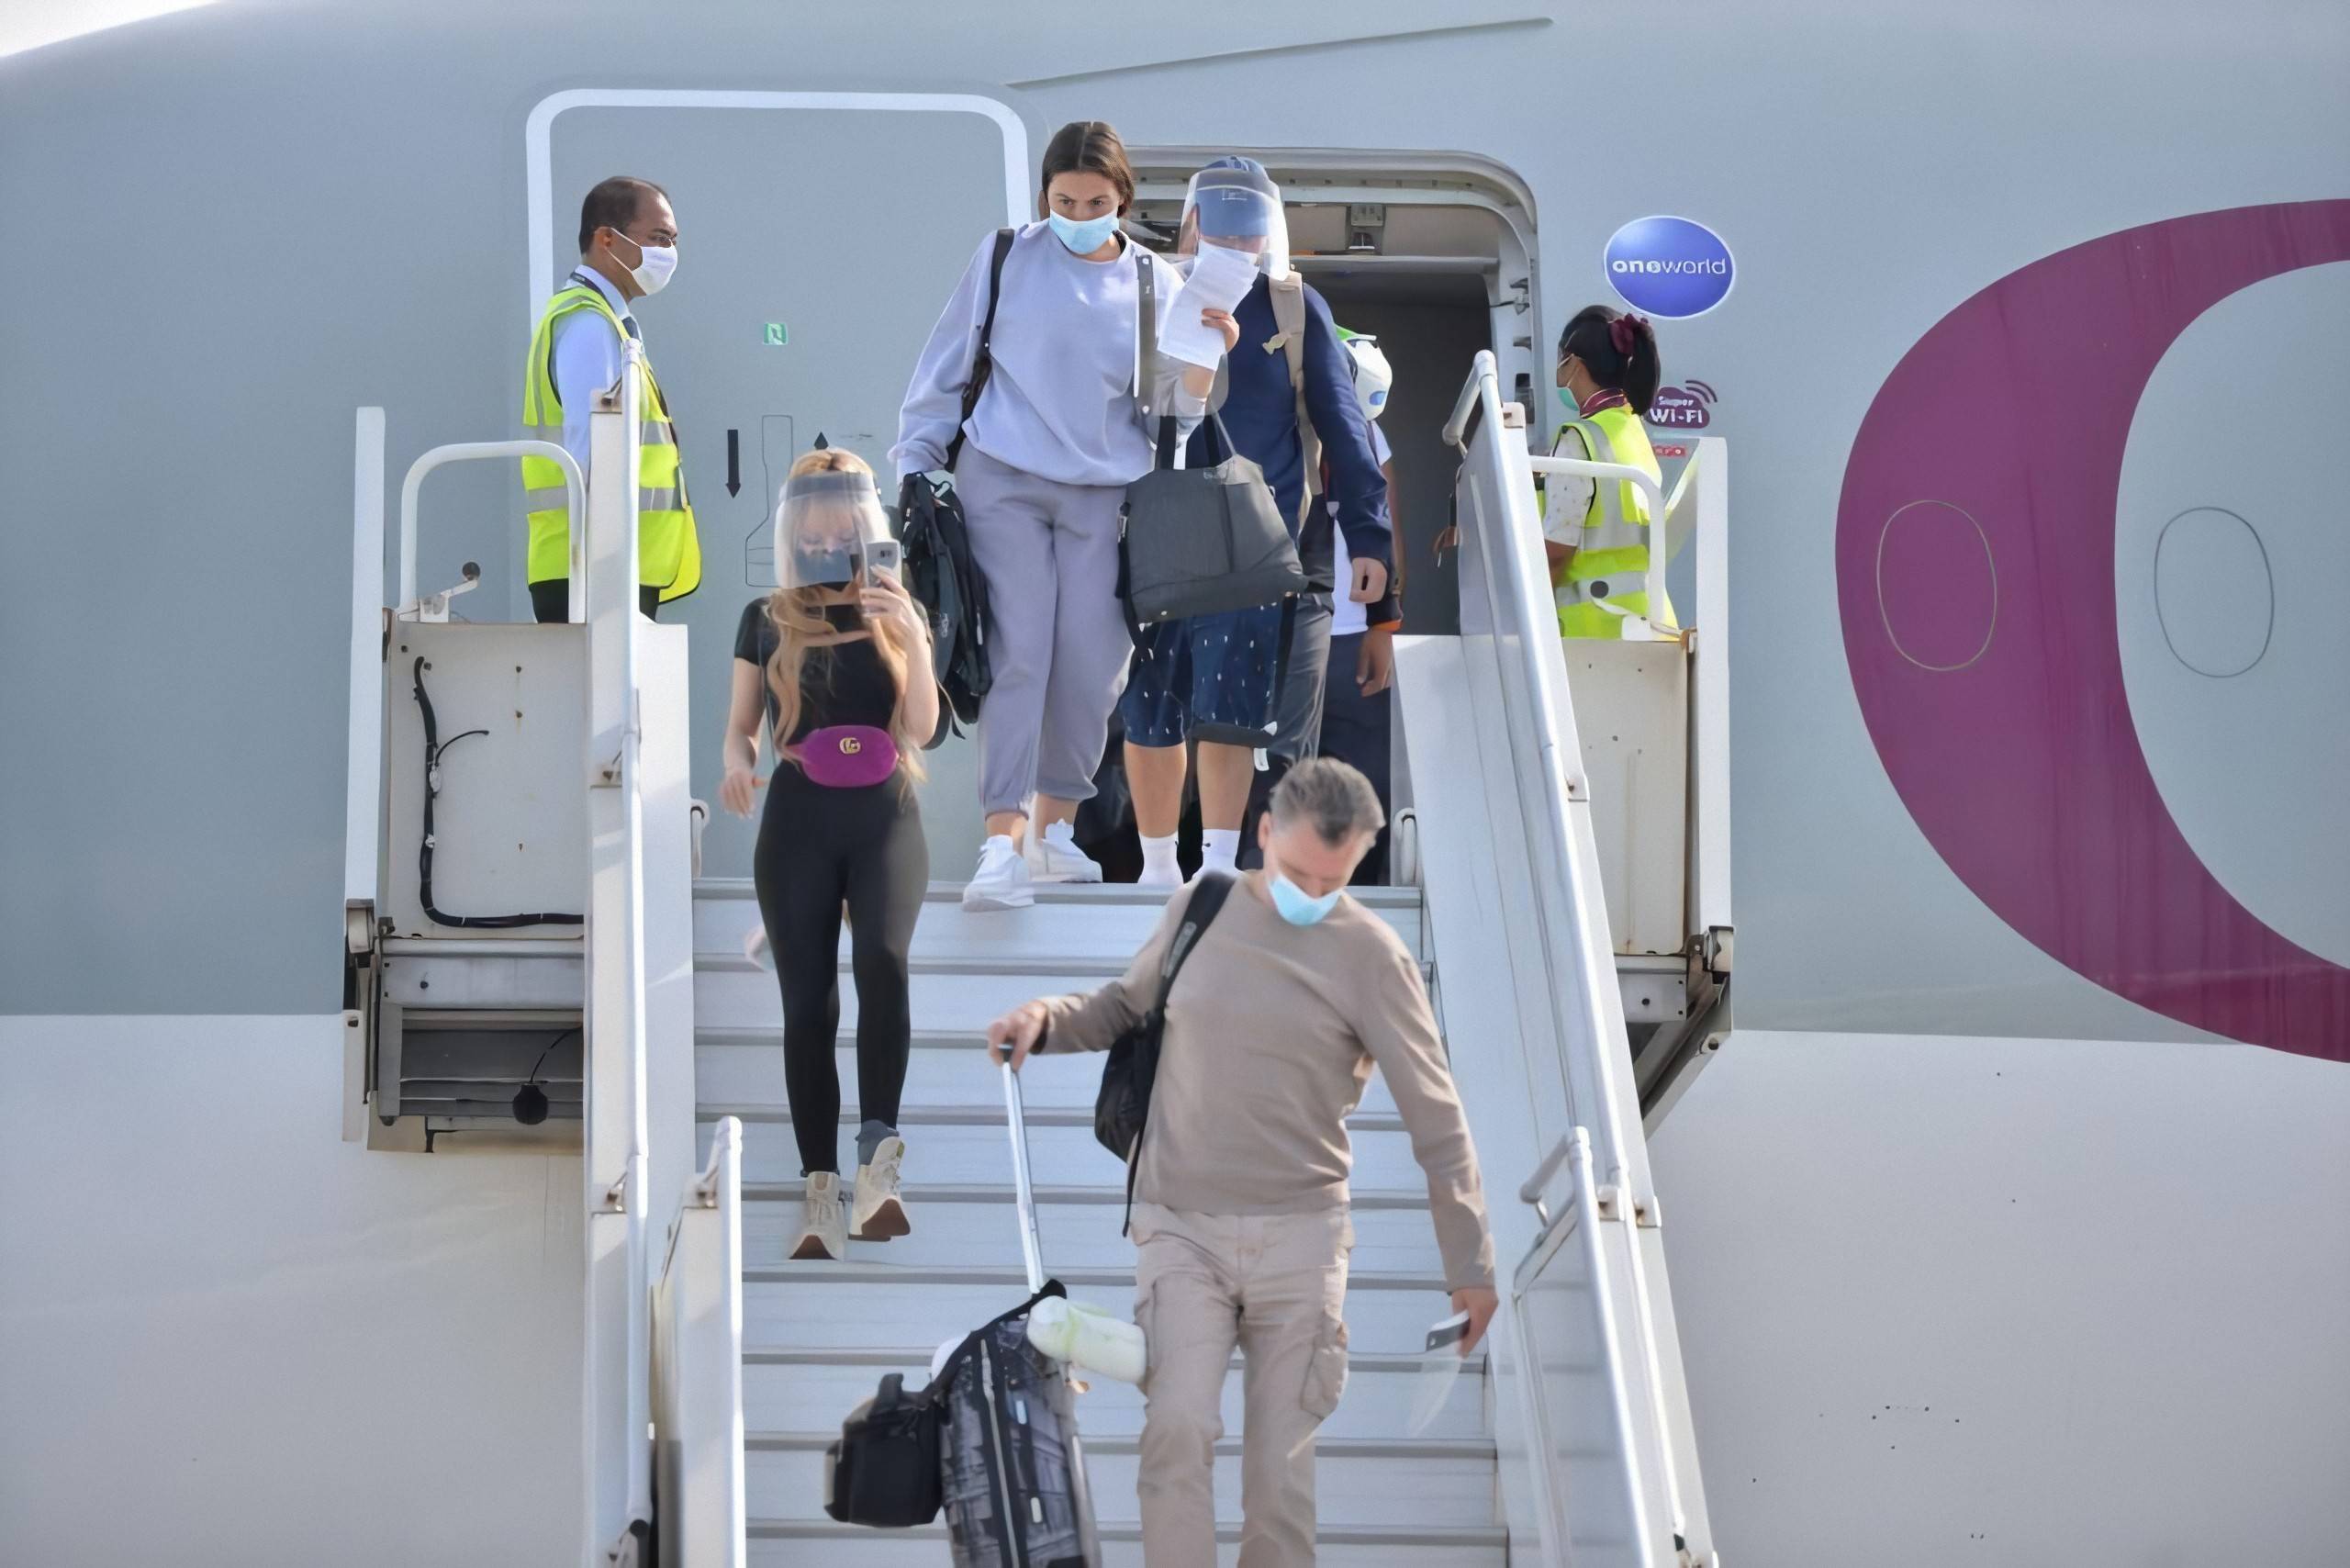 7月15日,在马尔代夫维拉纳国际机场,戴口罩的旅客走下飞机.